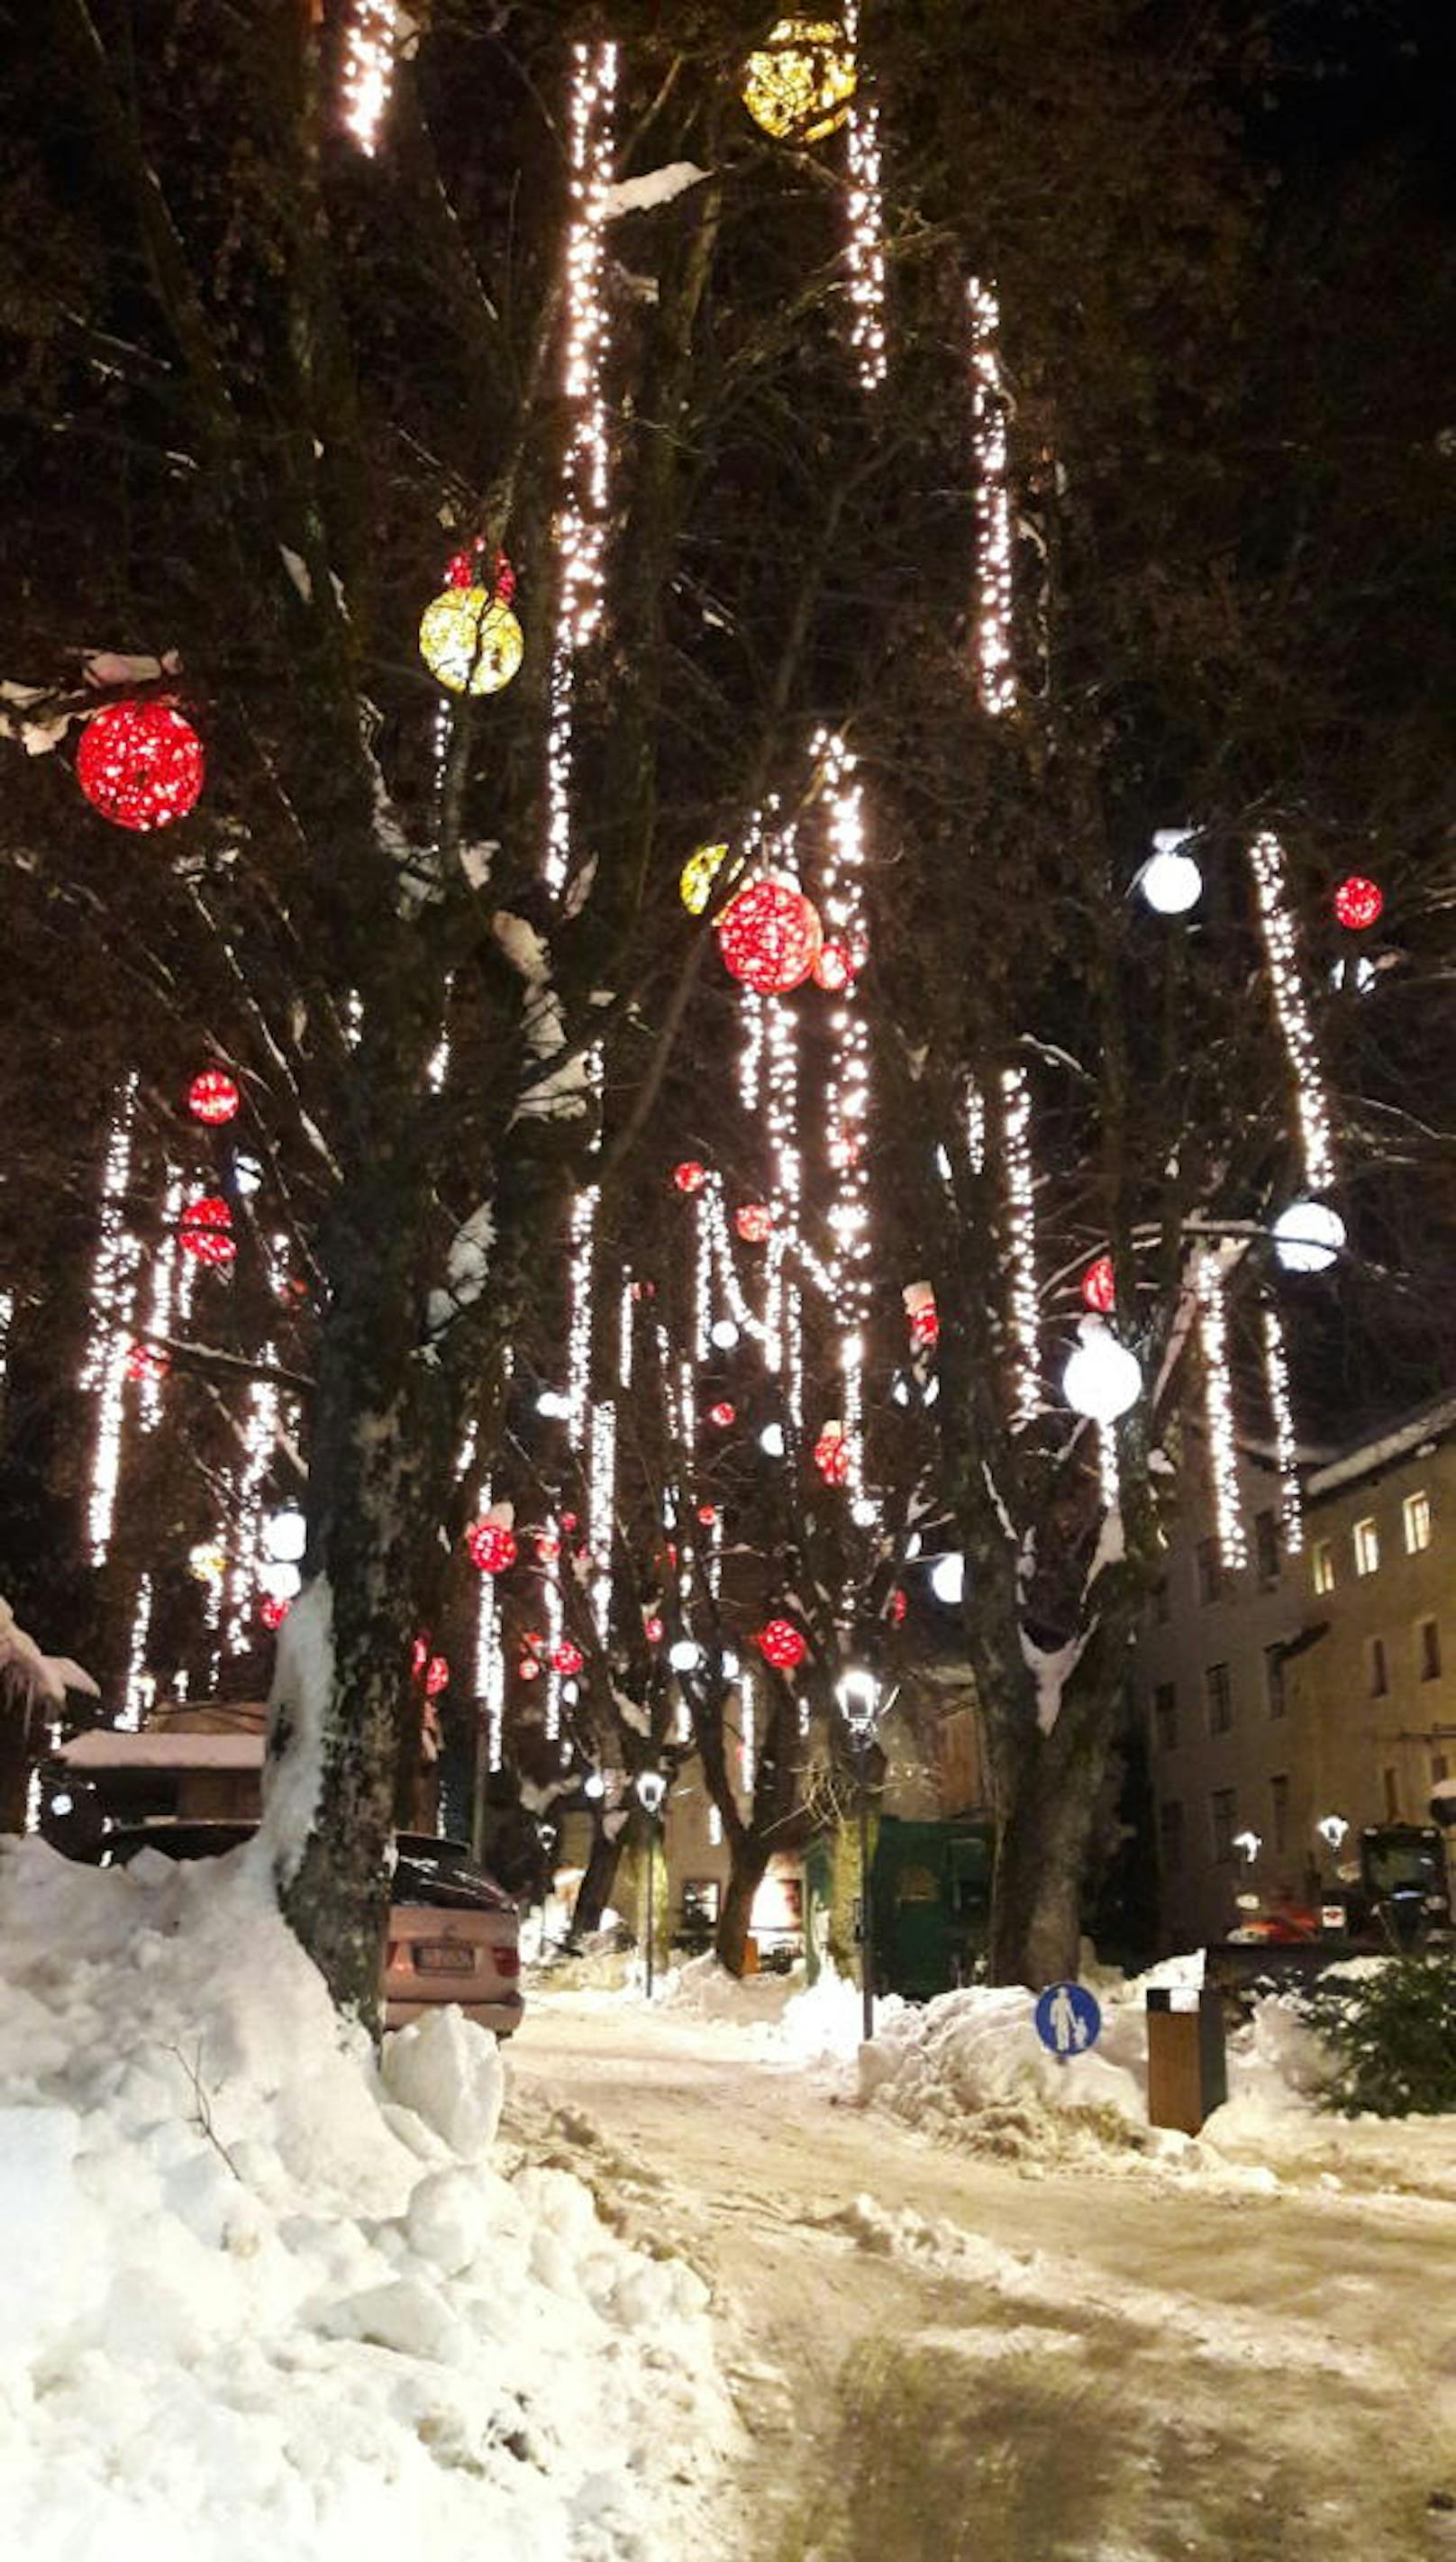 Weihnachten ist zwar seit vier Wochen passe, in Kitzbühel sind die Bäume trotzdem mit Lichterketten und Co. geschmückt.